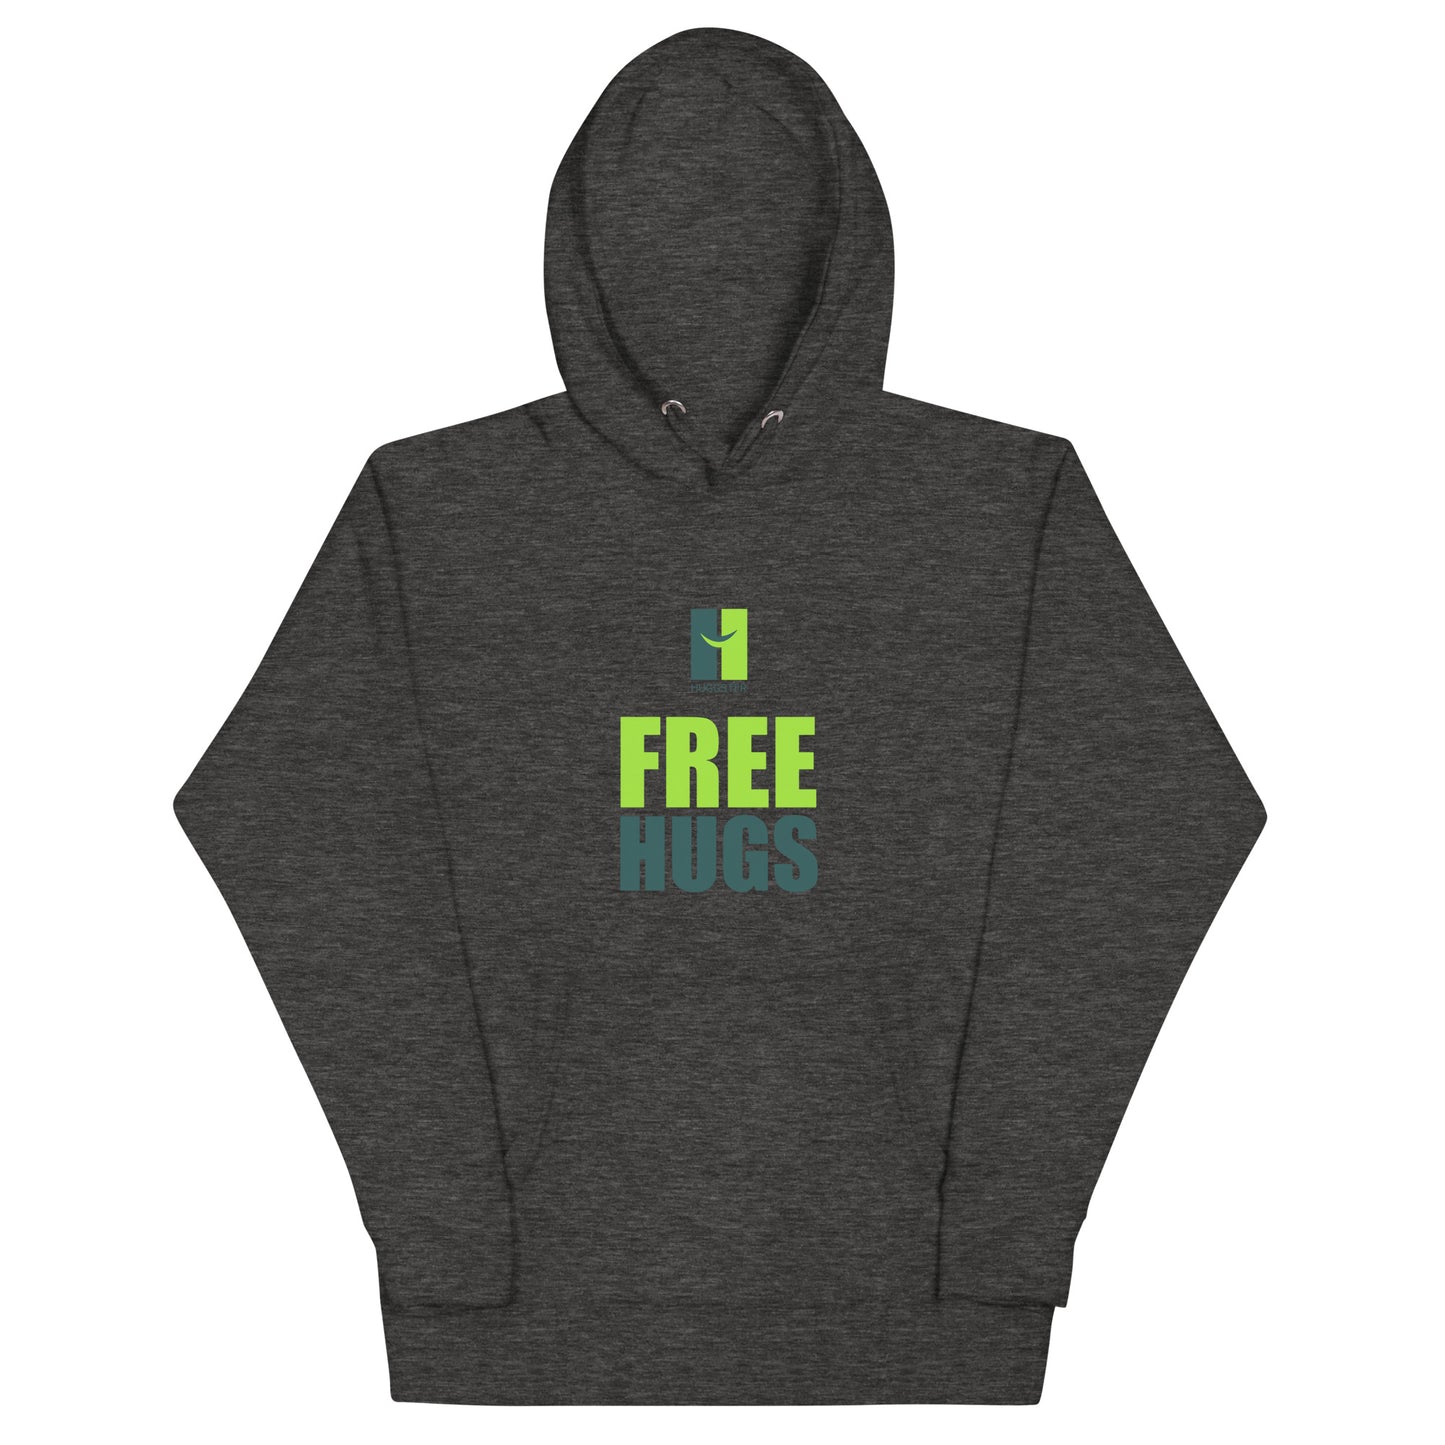 Unisex Premium Kapuzenpullover "Free Hugs"